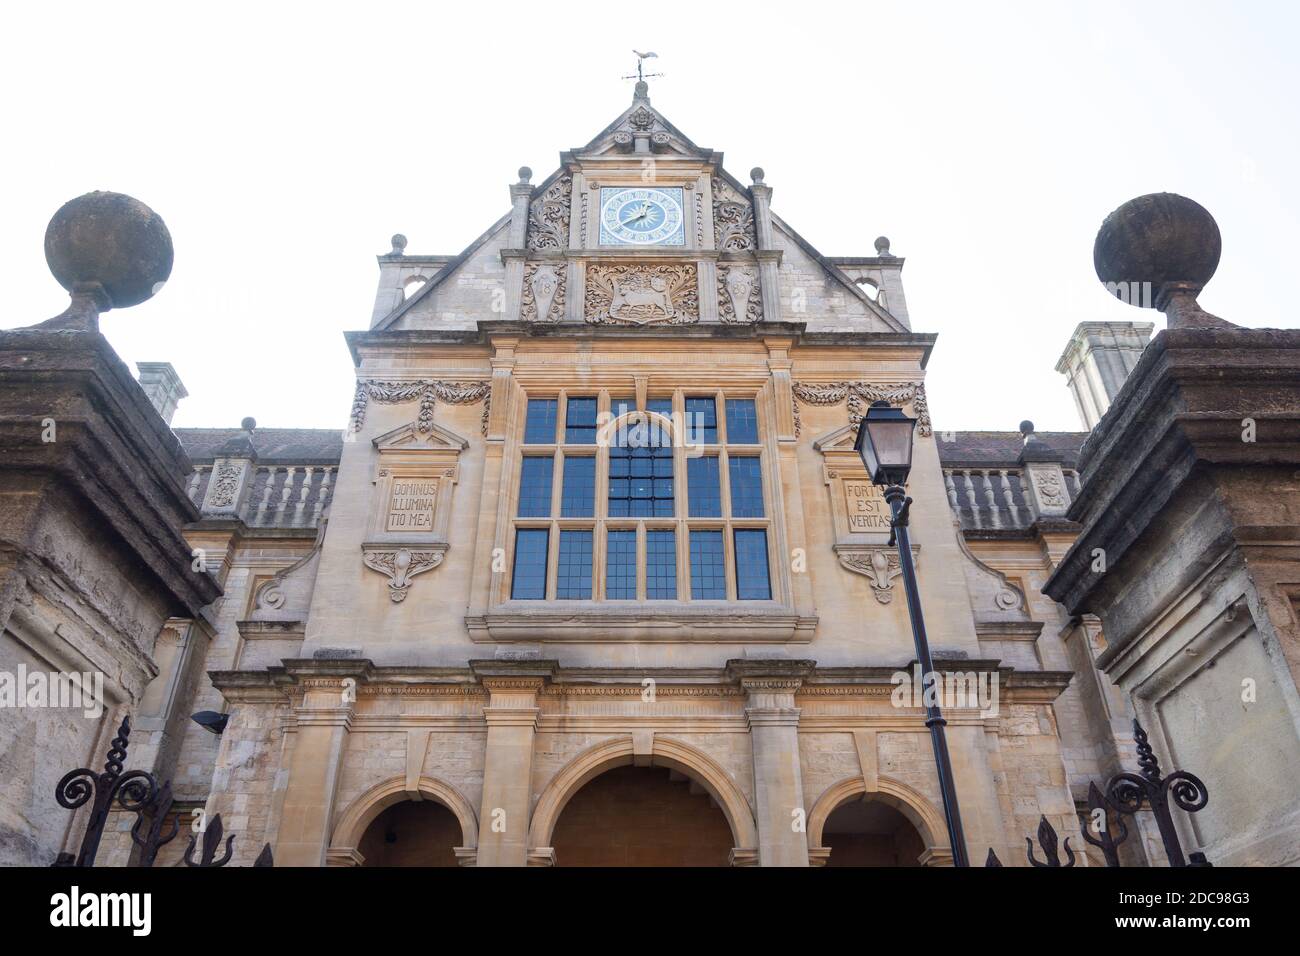 Bâtiment de la Faculté d'histoire, Université d'Oxford, George Street, Oxford, Oxfordshire, Angleterre, Royaume-Uni Banque D'Images